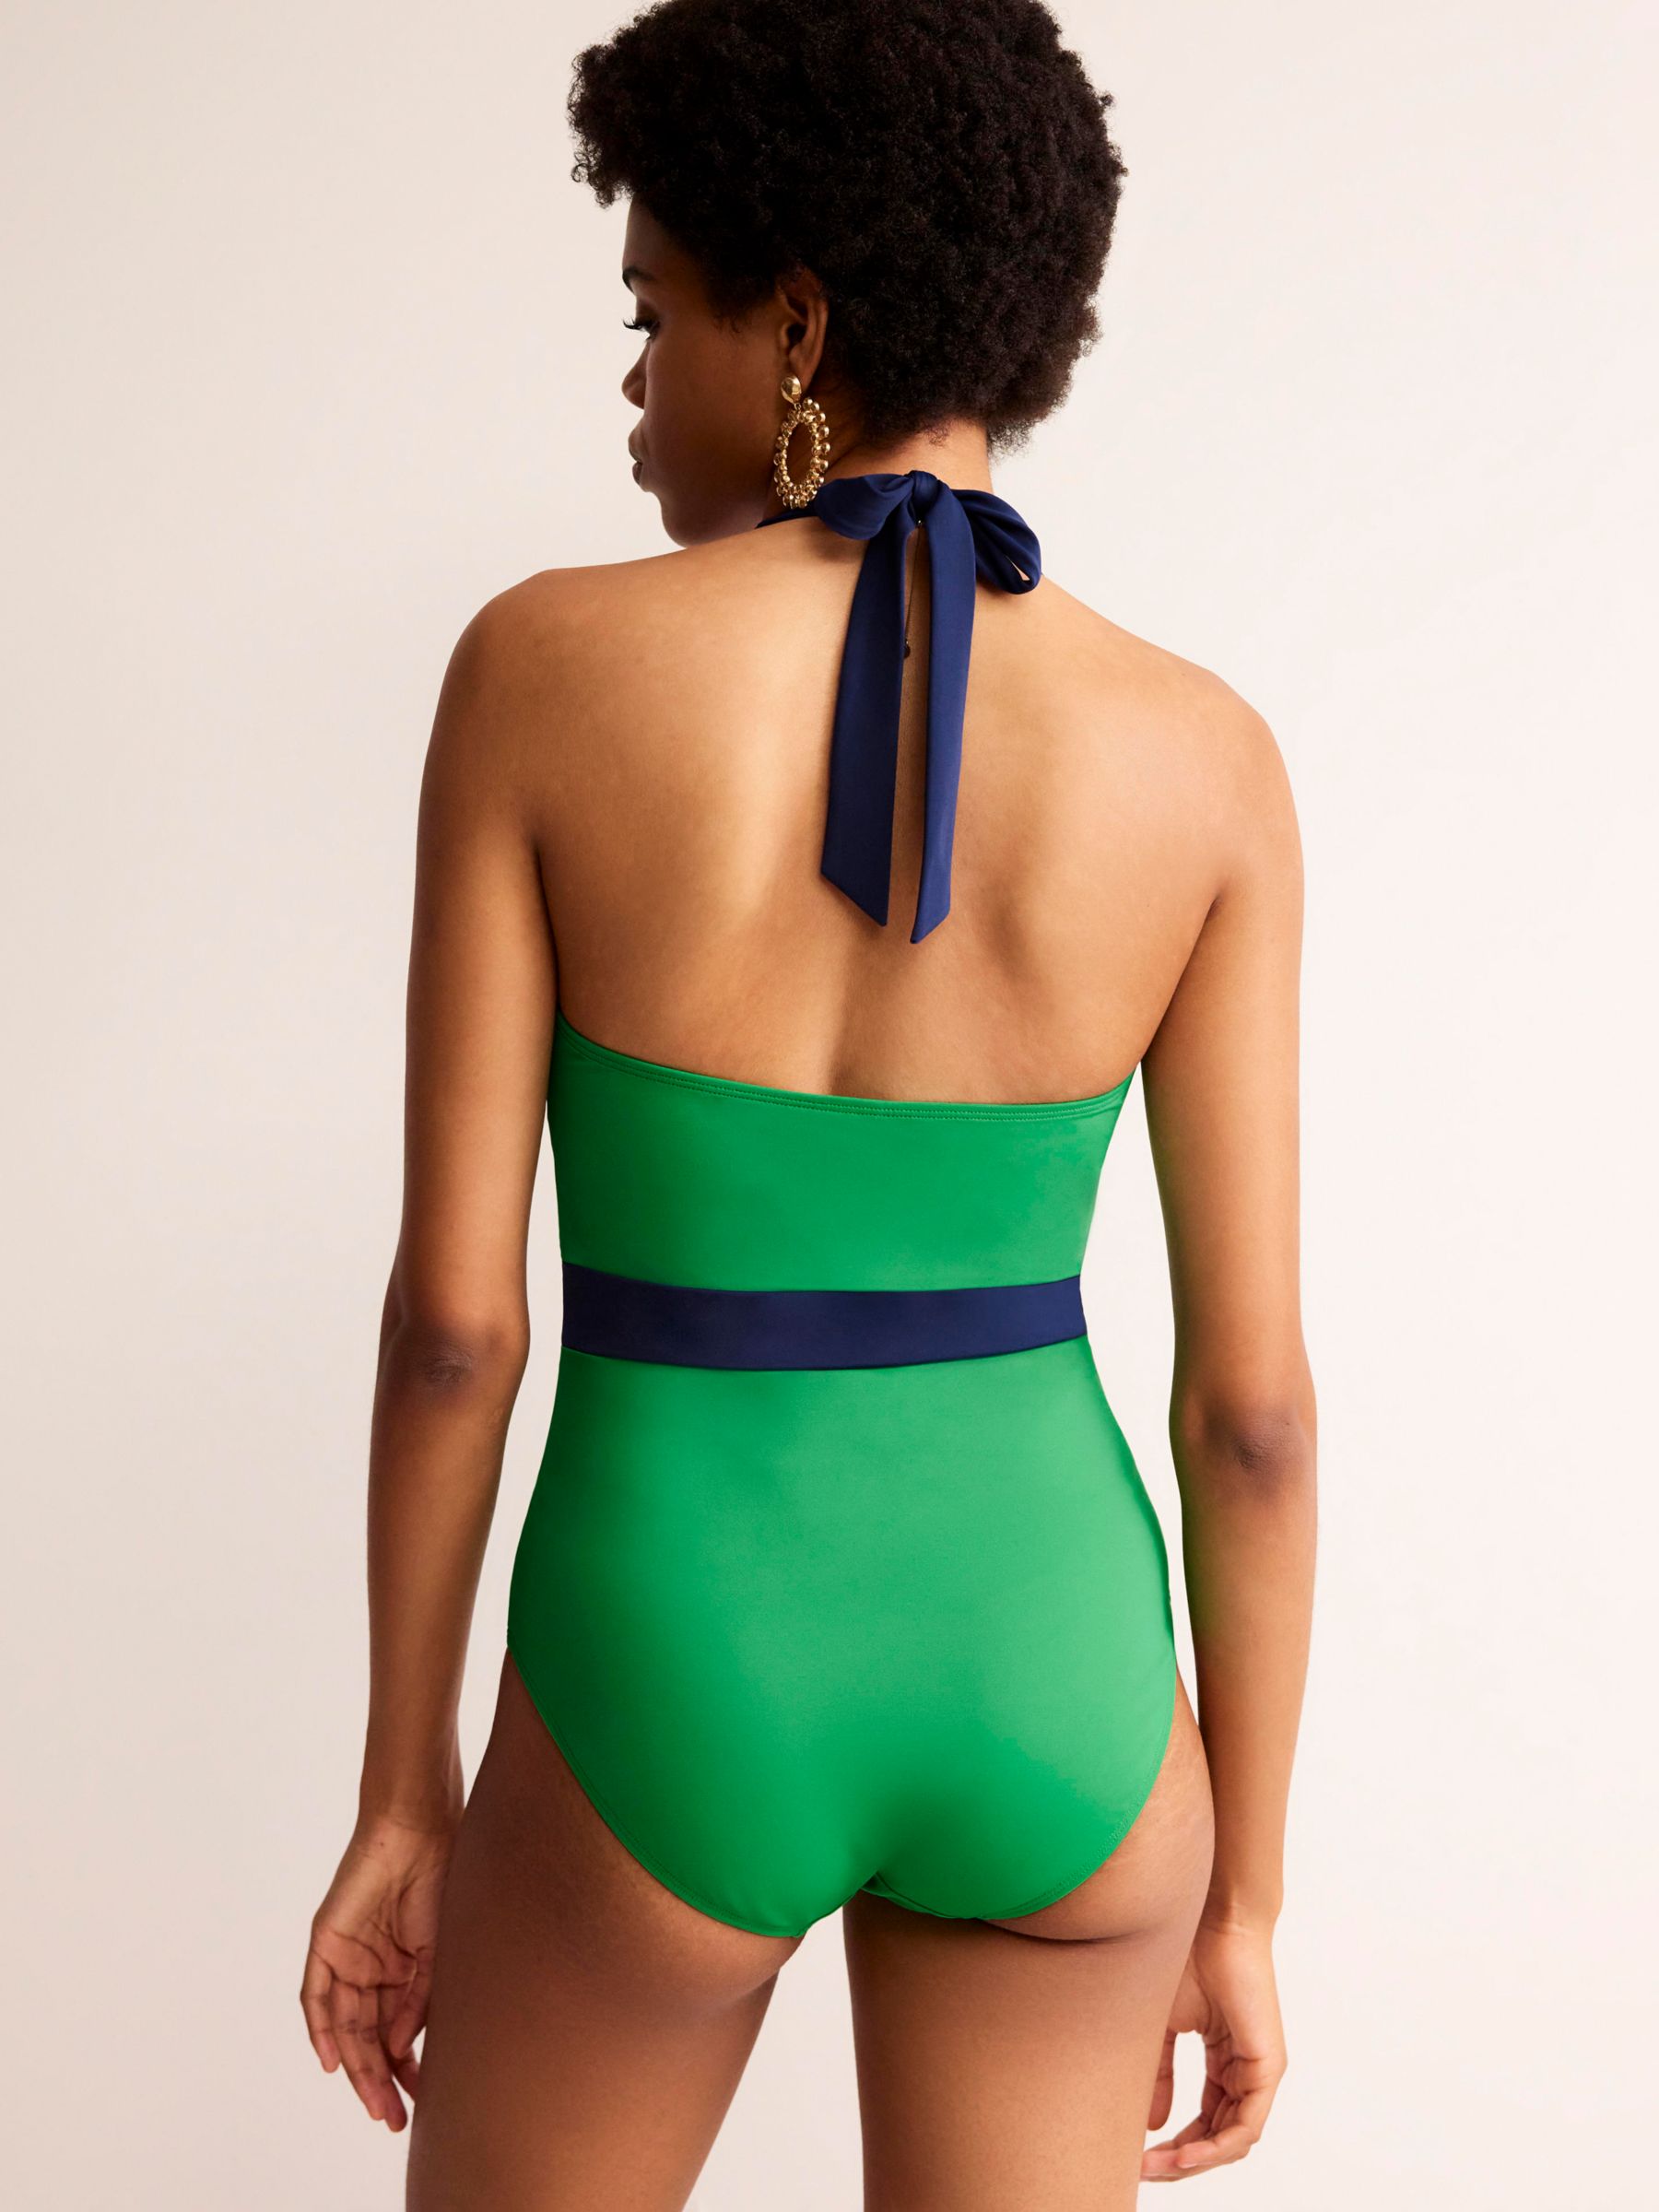 Boden Kefalonia Halterneck Swimsuit, Bright Green/Navy, 8